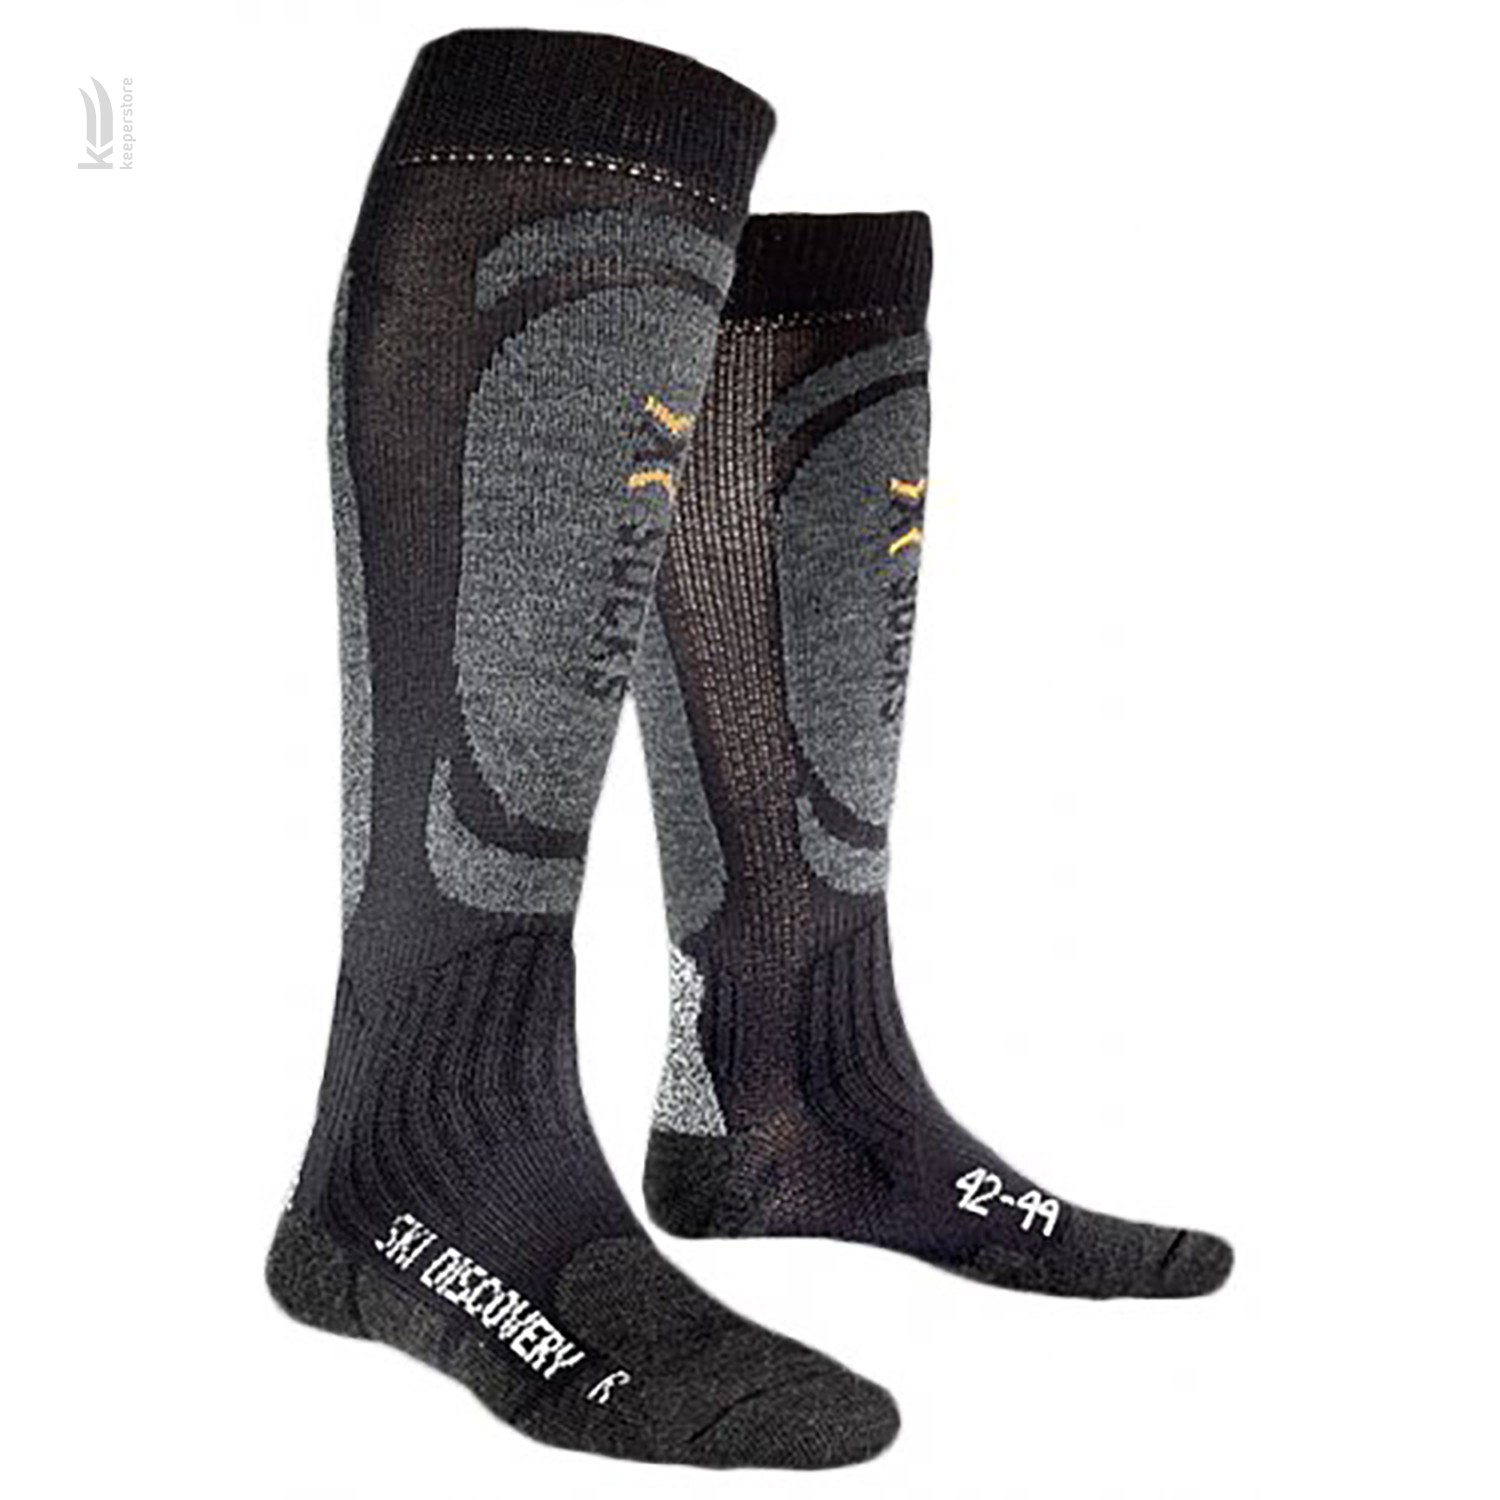 X-Socks Ski Discovery Black / Anthracite (45-47)